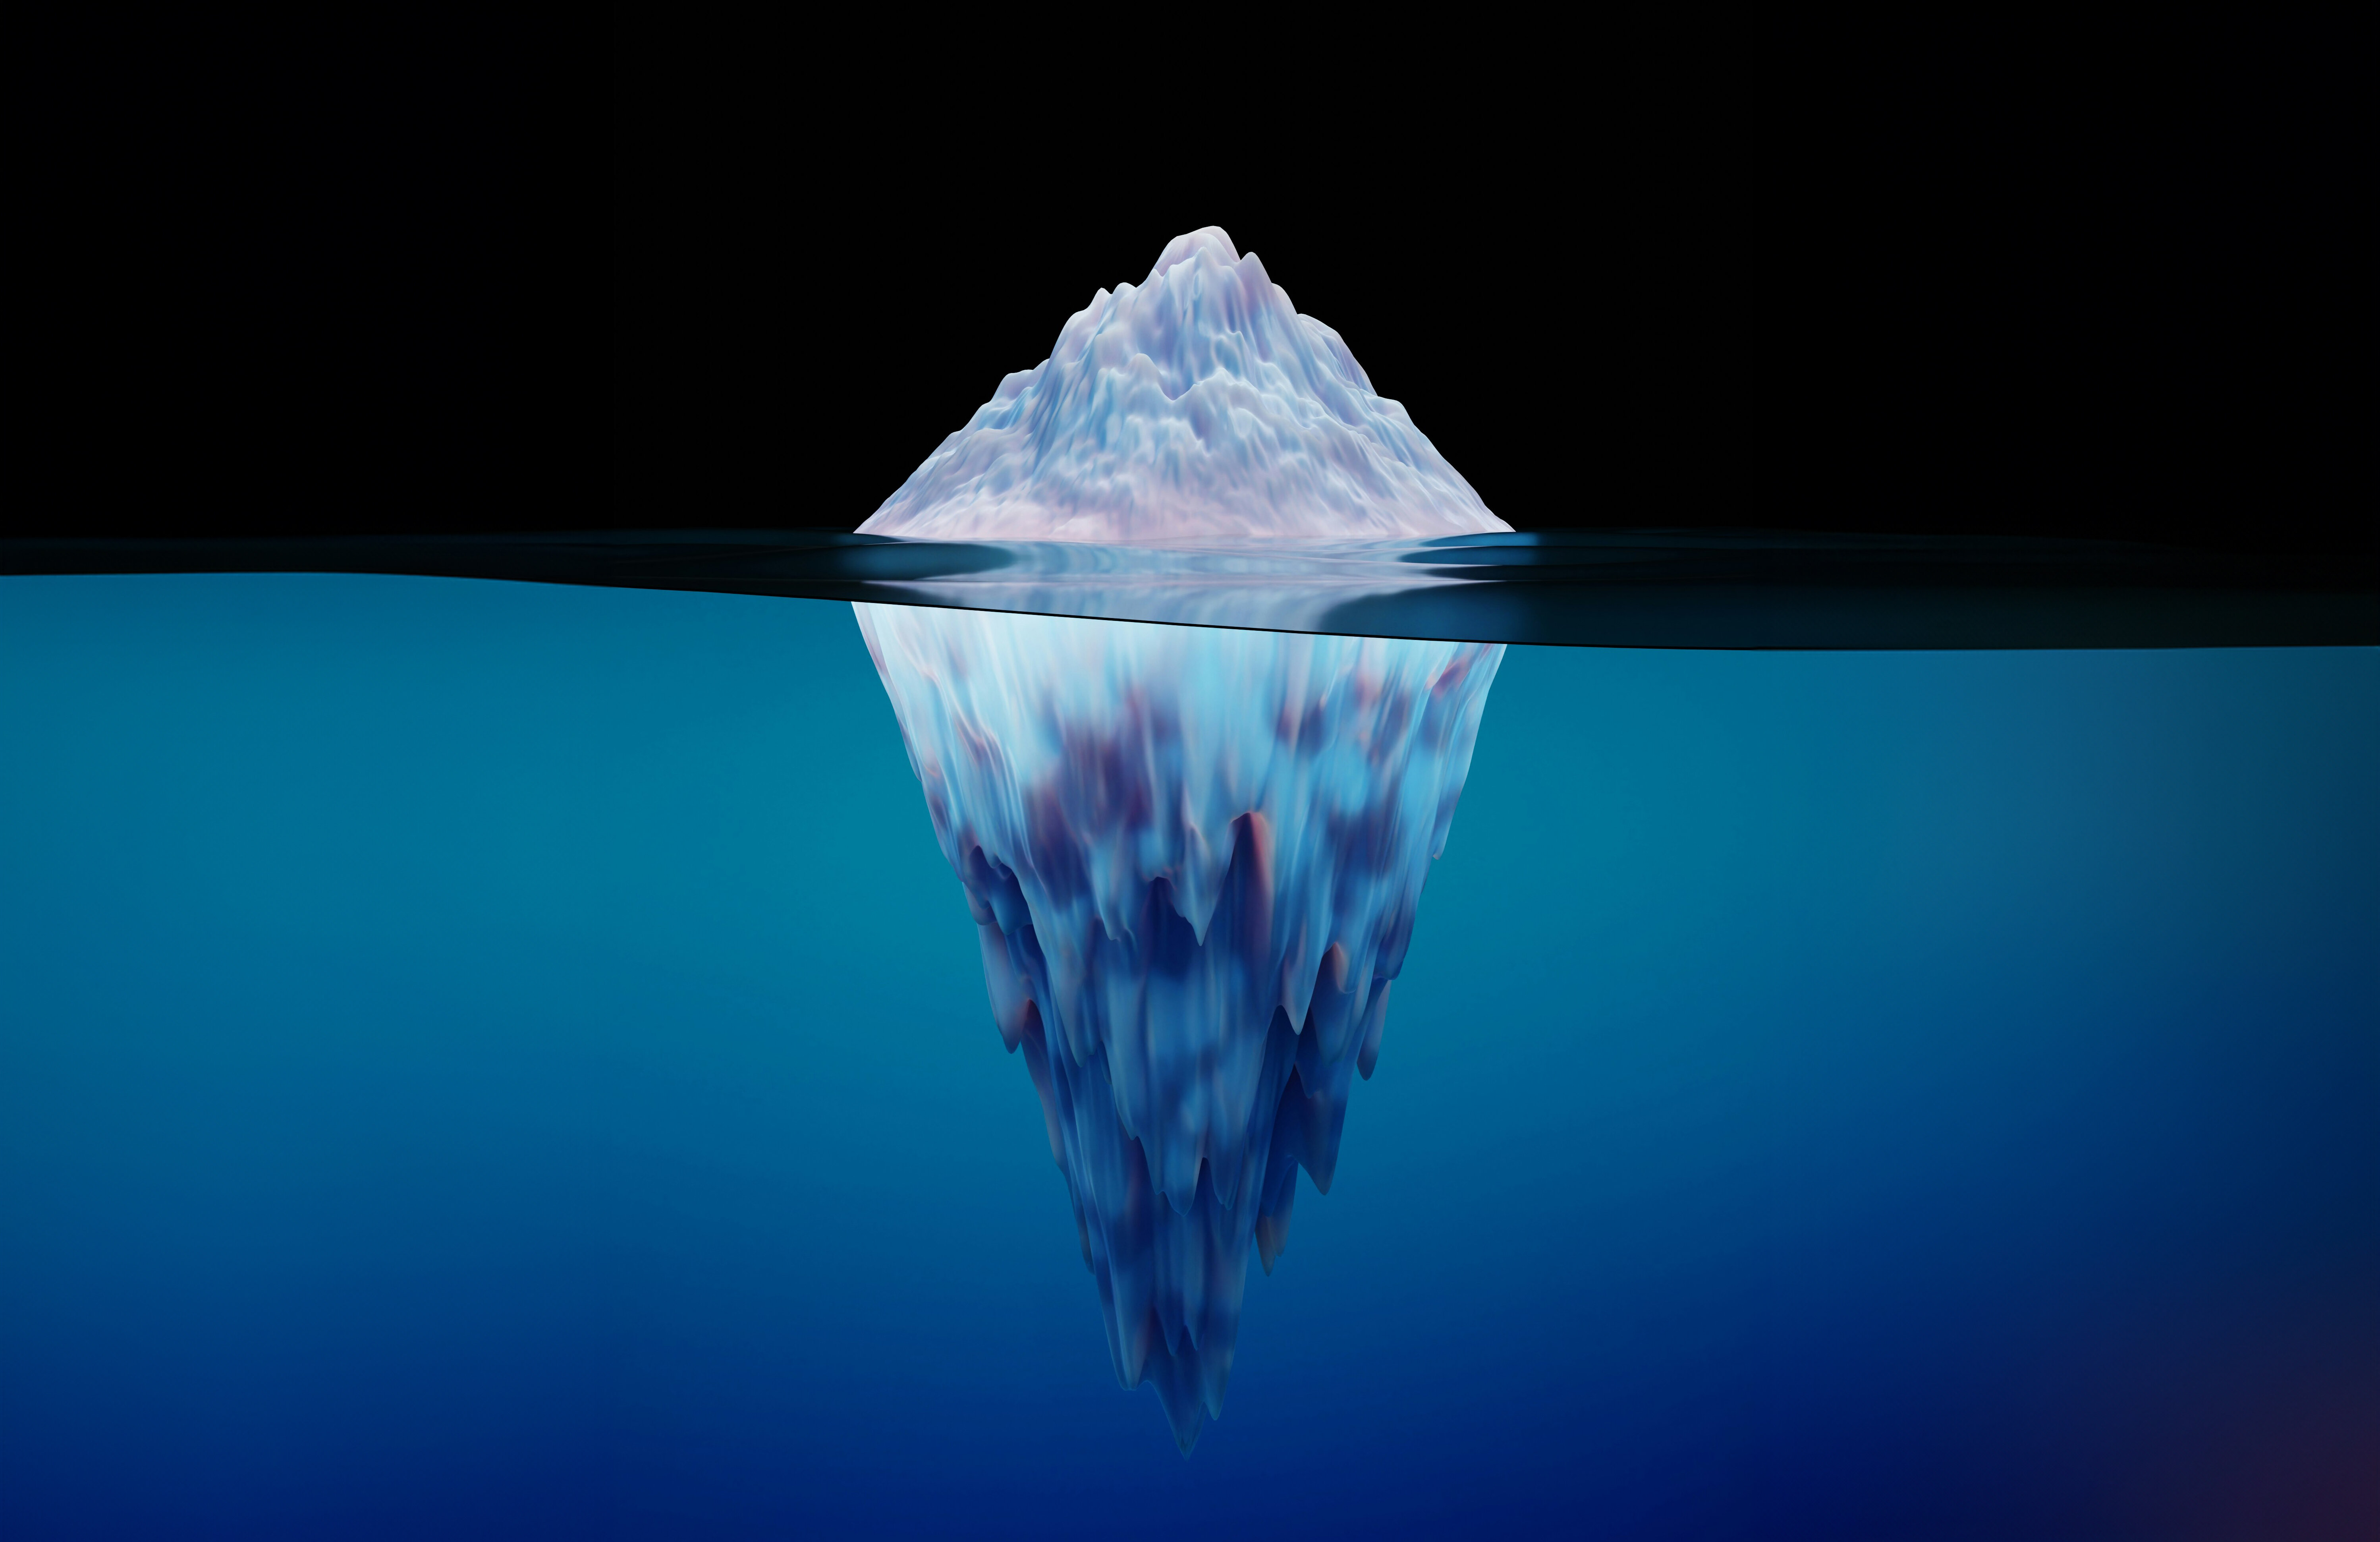 Eisberg im Wasser auf schwarzem und blauem Hintergrund